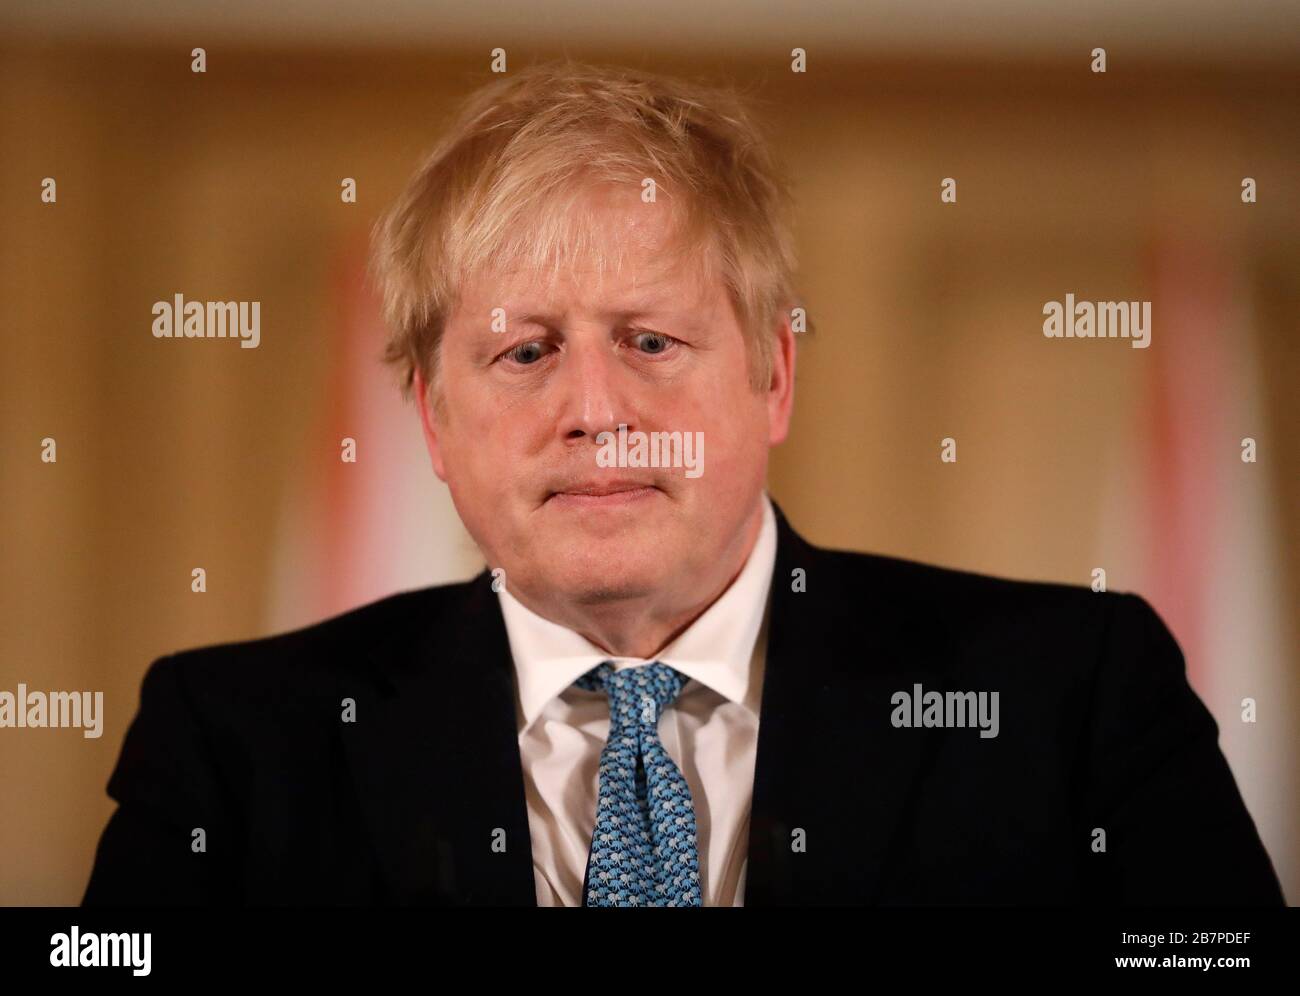 Le Premier ministre Boris Johnson lors d'un exposé médiatique à Downing Street, Londres, sur Coronavirus (COVID-19). Date de l'image: Mardi 17 mars 2020. Voir l'histoire de PA SANTÉ Coronavirus. Crédit photo devrait lire: Matt Dunham/PA fil Banque D'Images